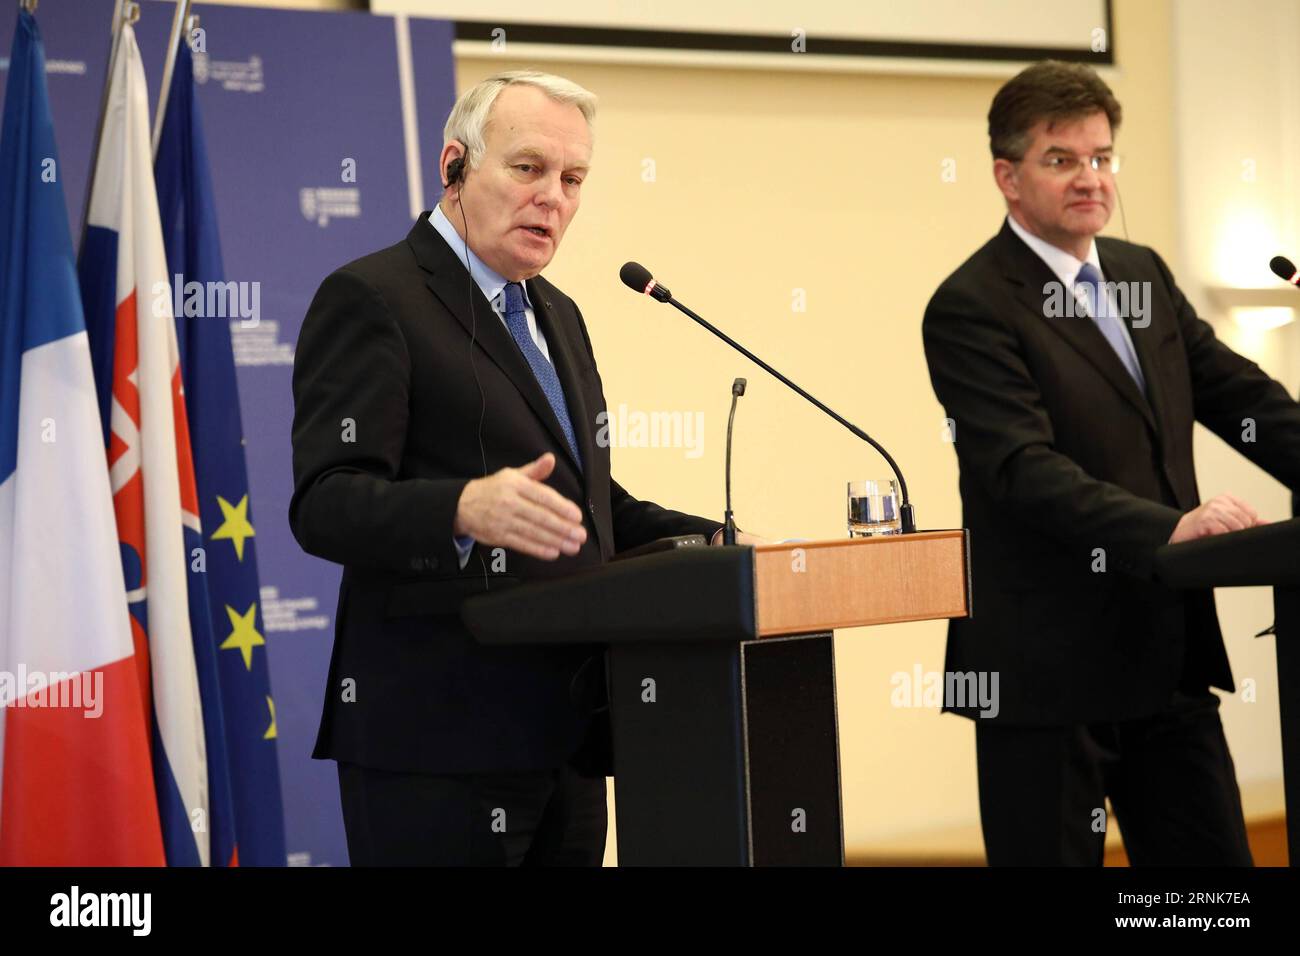 (170310) -- BRATISLAVA, 10 marzo 2017 -- il ministro degli Esteri francese Jean-Marc Ayrault (L) interviene durante una conferenza stampa con il ministro slovacco degli affari esteri ed europei Miroslav Lajcak a Bratislava, capitale della Slovacchia, il 10 marzo 2017. L'Europa a più velocità non può significare una divisione gerarchica dell'Unione europea (UE) e non può nuocere all'unità dell'UE, il ministro degli Esteri francese Jean-Marc Ayrault ha annunciato venerdì in una conferenza stampa. ) SLOVACCHIA-BRATISLAVA-FRANCIA-FM-MEETING AndrejxKlizan PUBLICATIONxNOTxINxCHN Bratislava 10 marzo 2017 ministri degli Esteri francesi Jean Marc Ayr Foto Stock